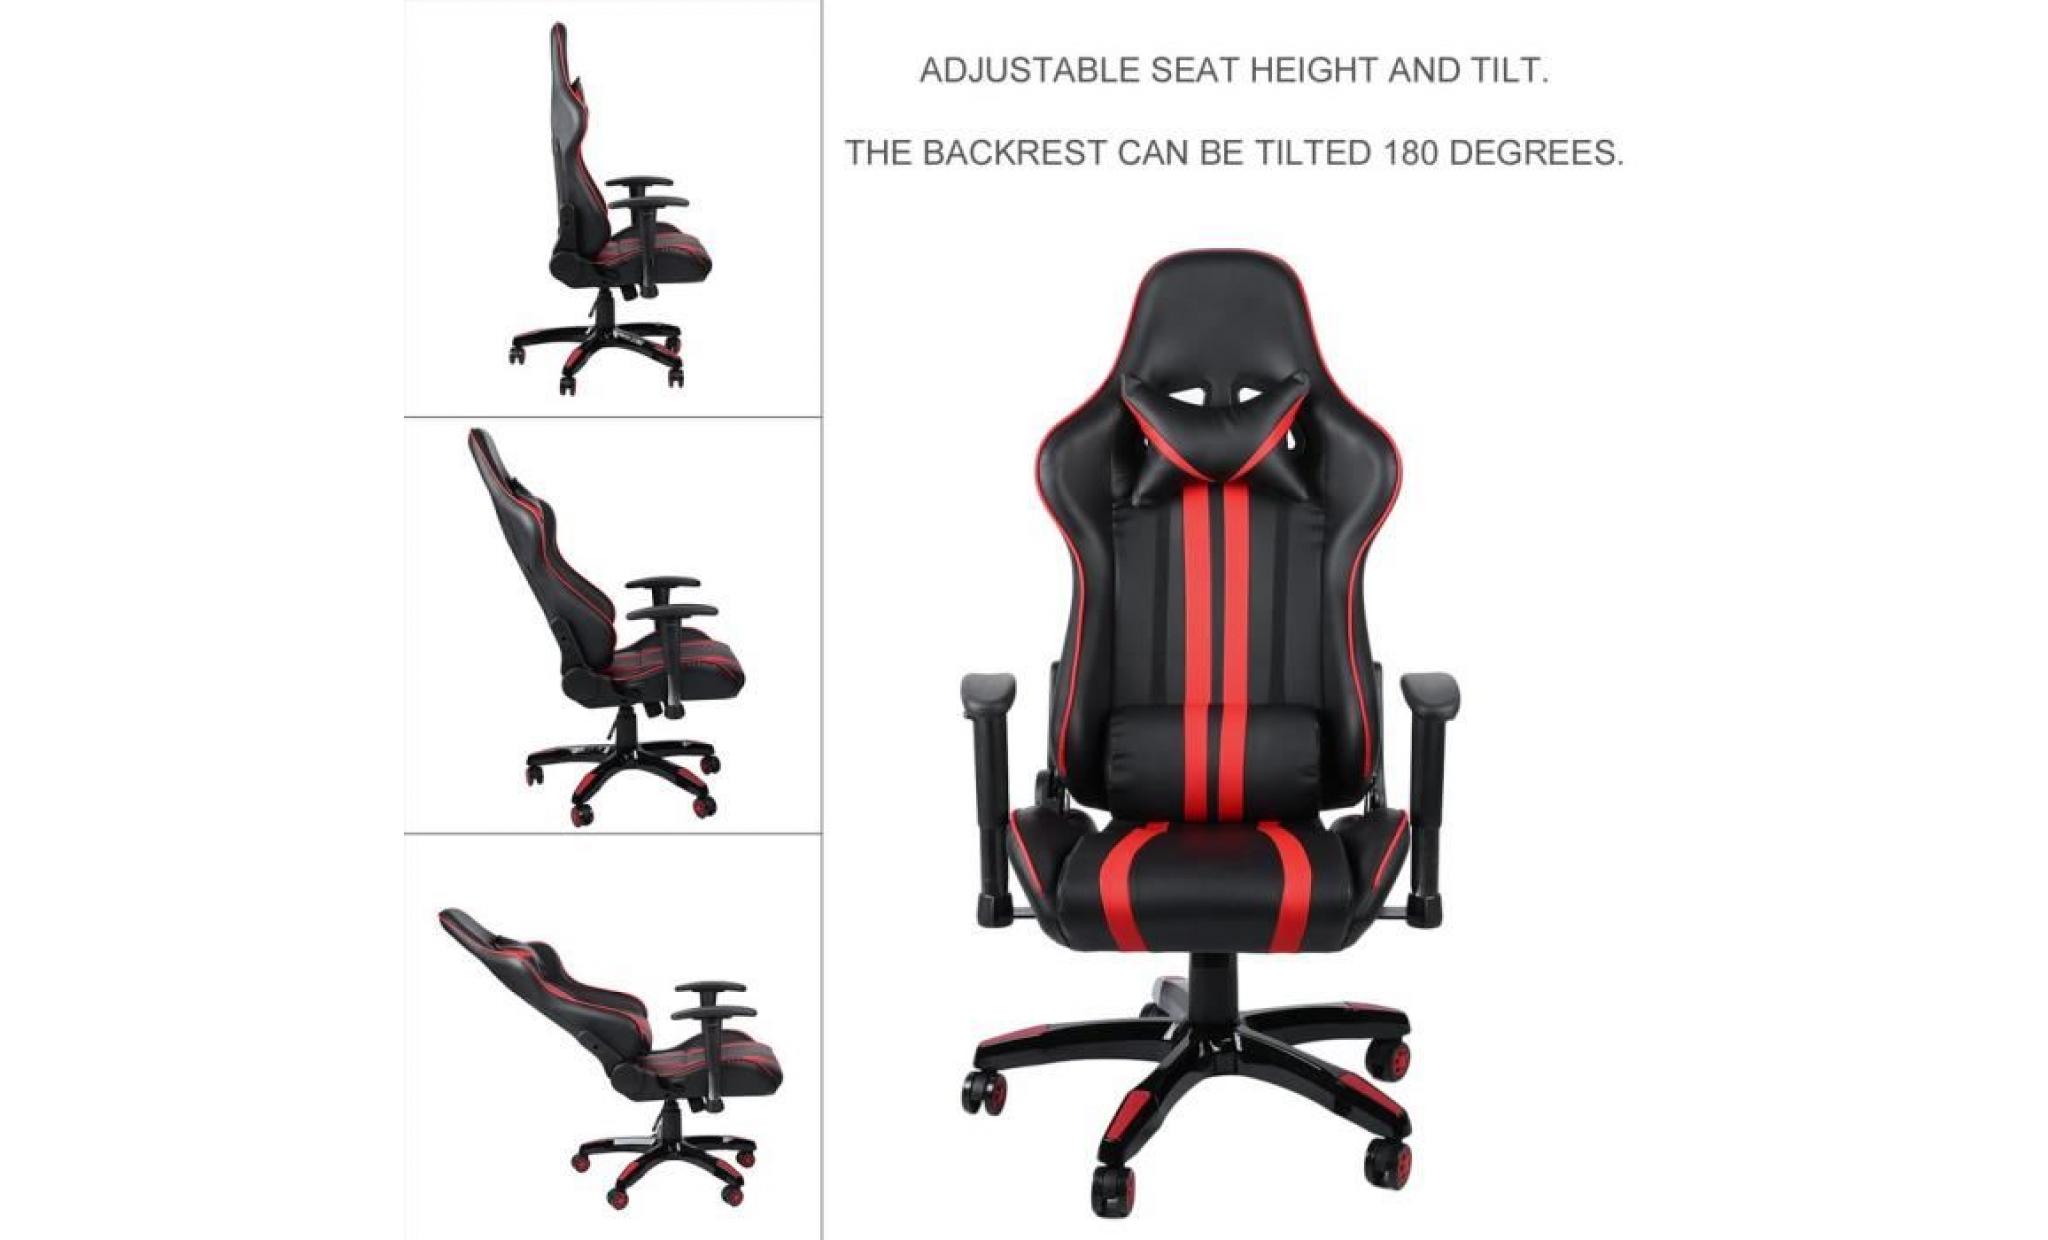 noir+rouge classique design cool fauteuil de jeu pu cuir chaise de cybercafé bureau maison anti fatigue pas cher